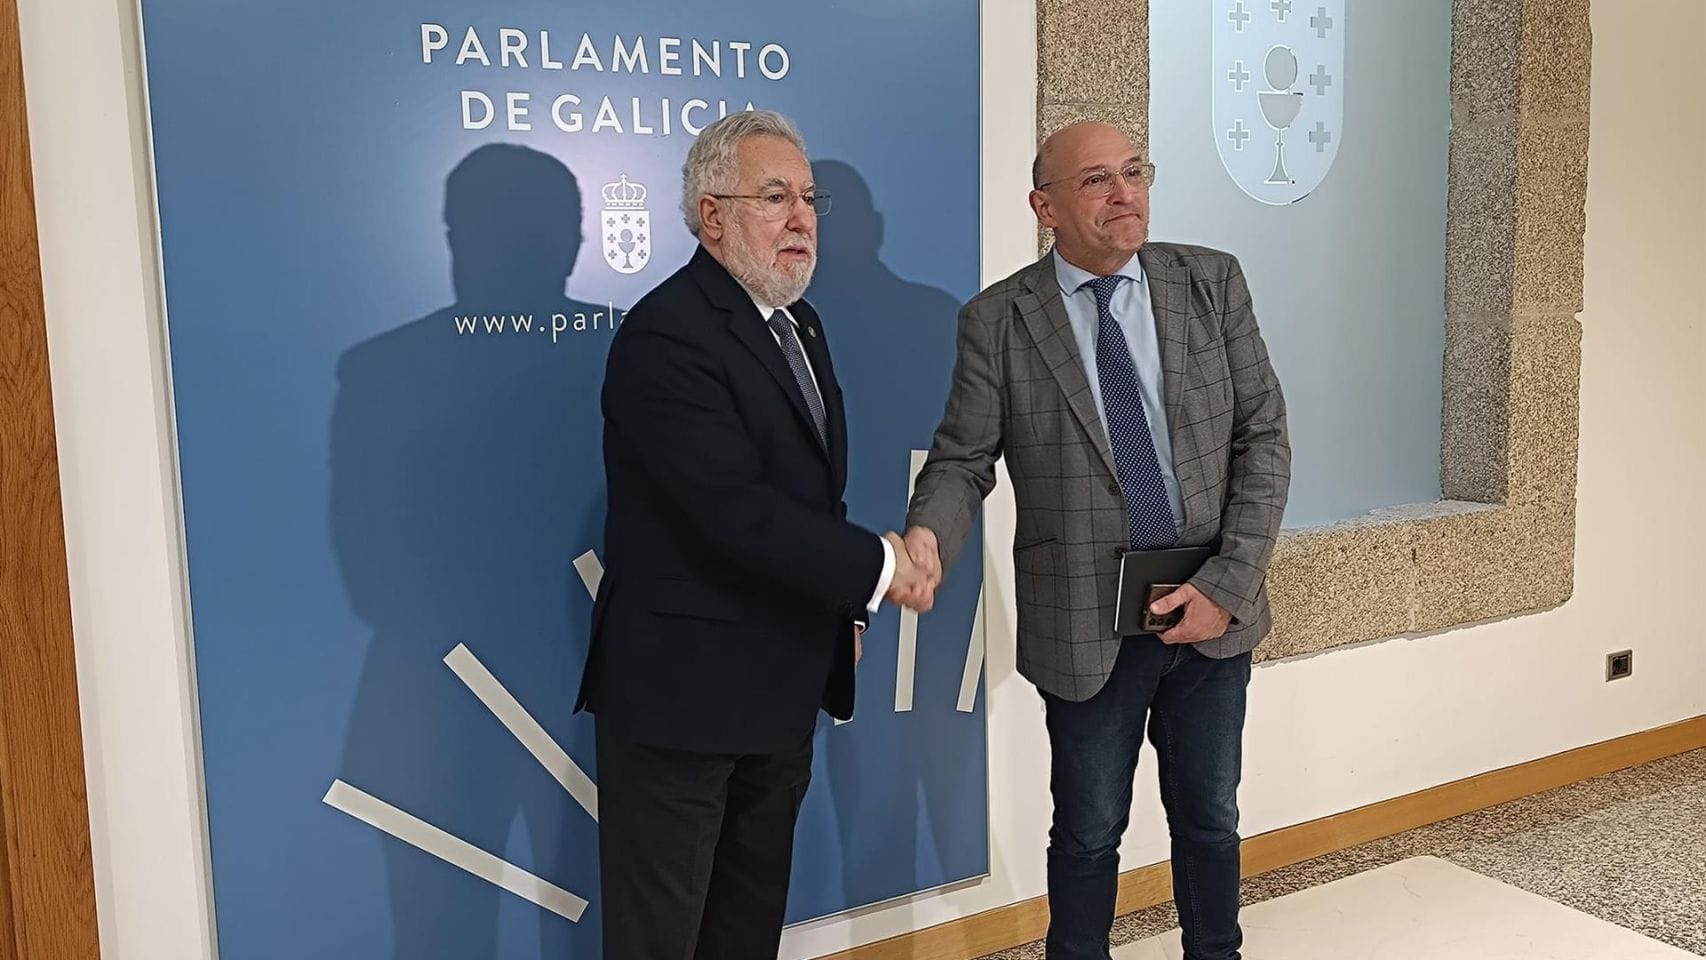 El presdiente del Parlamento de Galicia, Miguel Santalines, recibe al diputado de Democracia Ourensana, Armando Ojea.